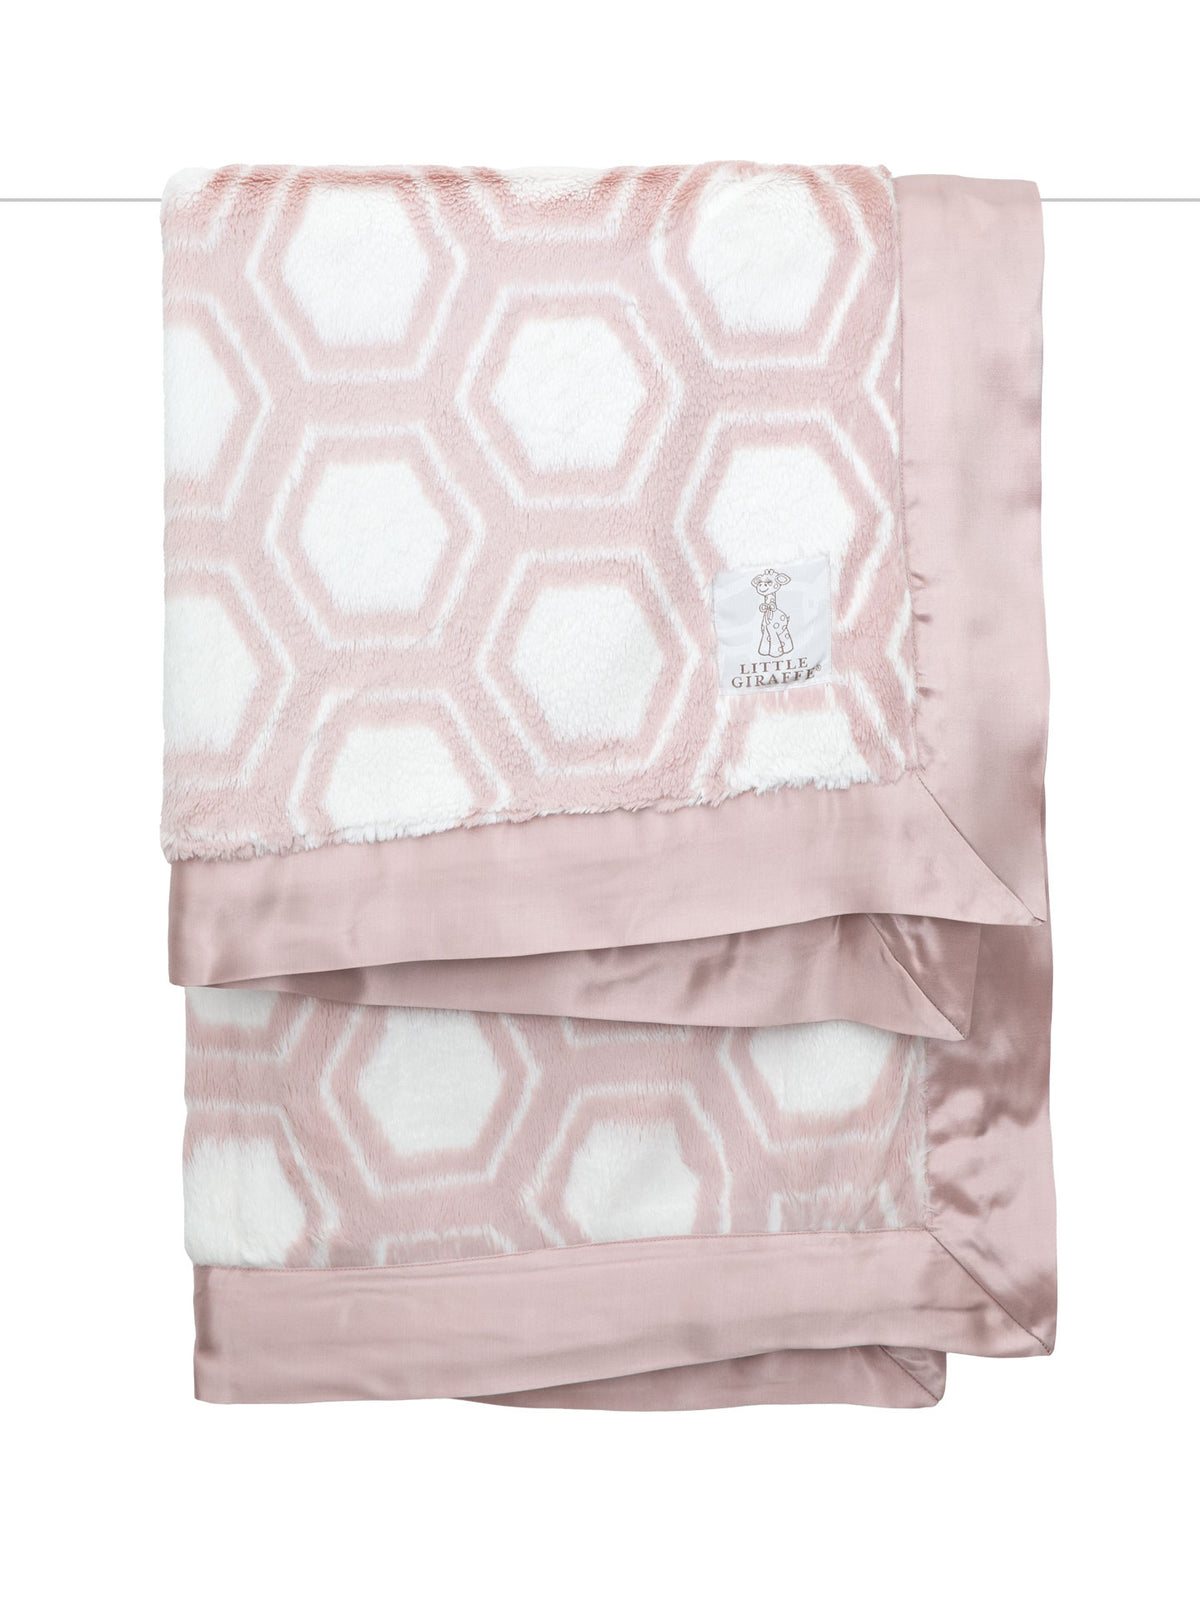 Luxe™ Honey Baby Blanket